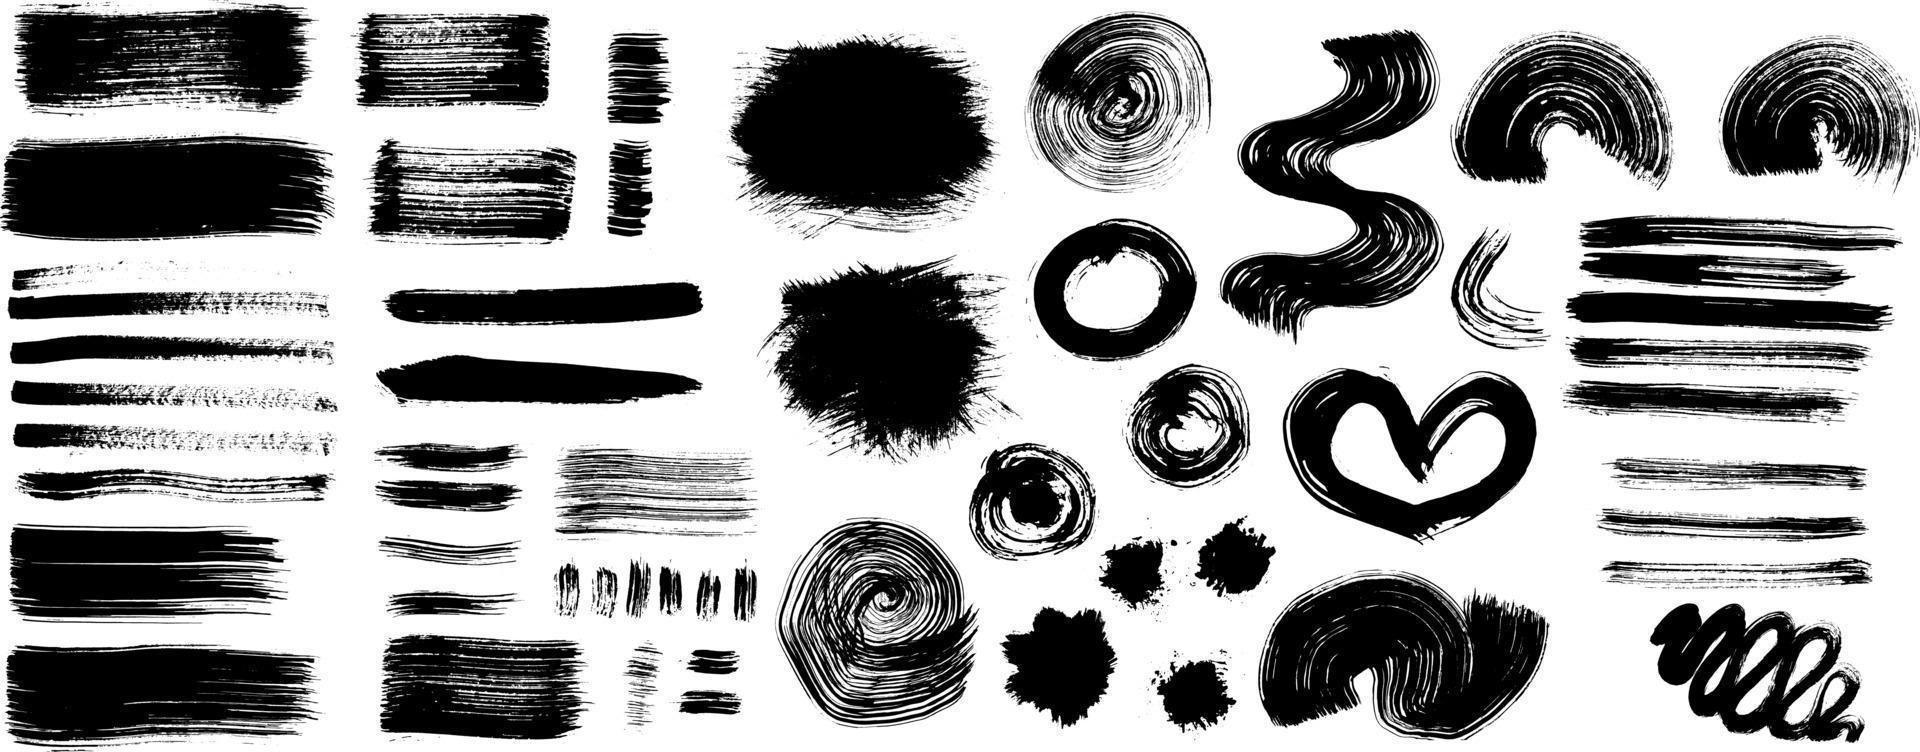 Plantilla de texturas de gran conjunto de vector urbano blanco y negro grunge. Fondo de socorro de superposición de polvo sucio oscuro. Cree fácilmente un efecto vintage abstracto, punteado, rayado, con ruido y grano.